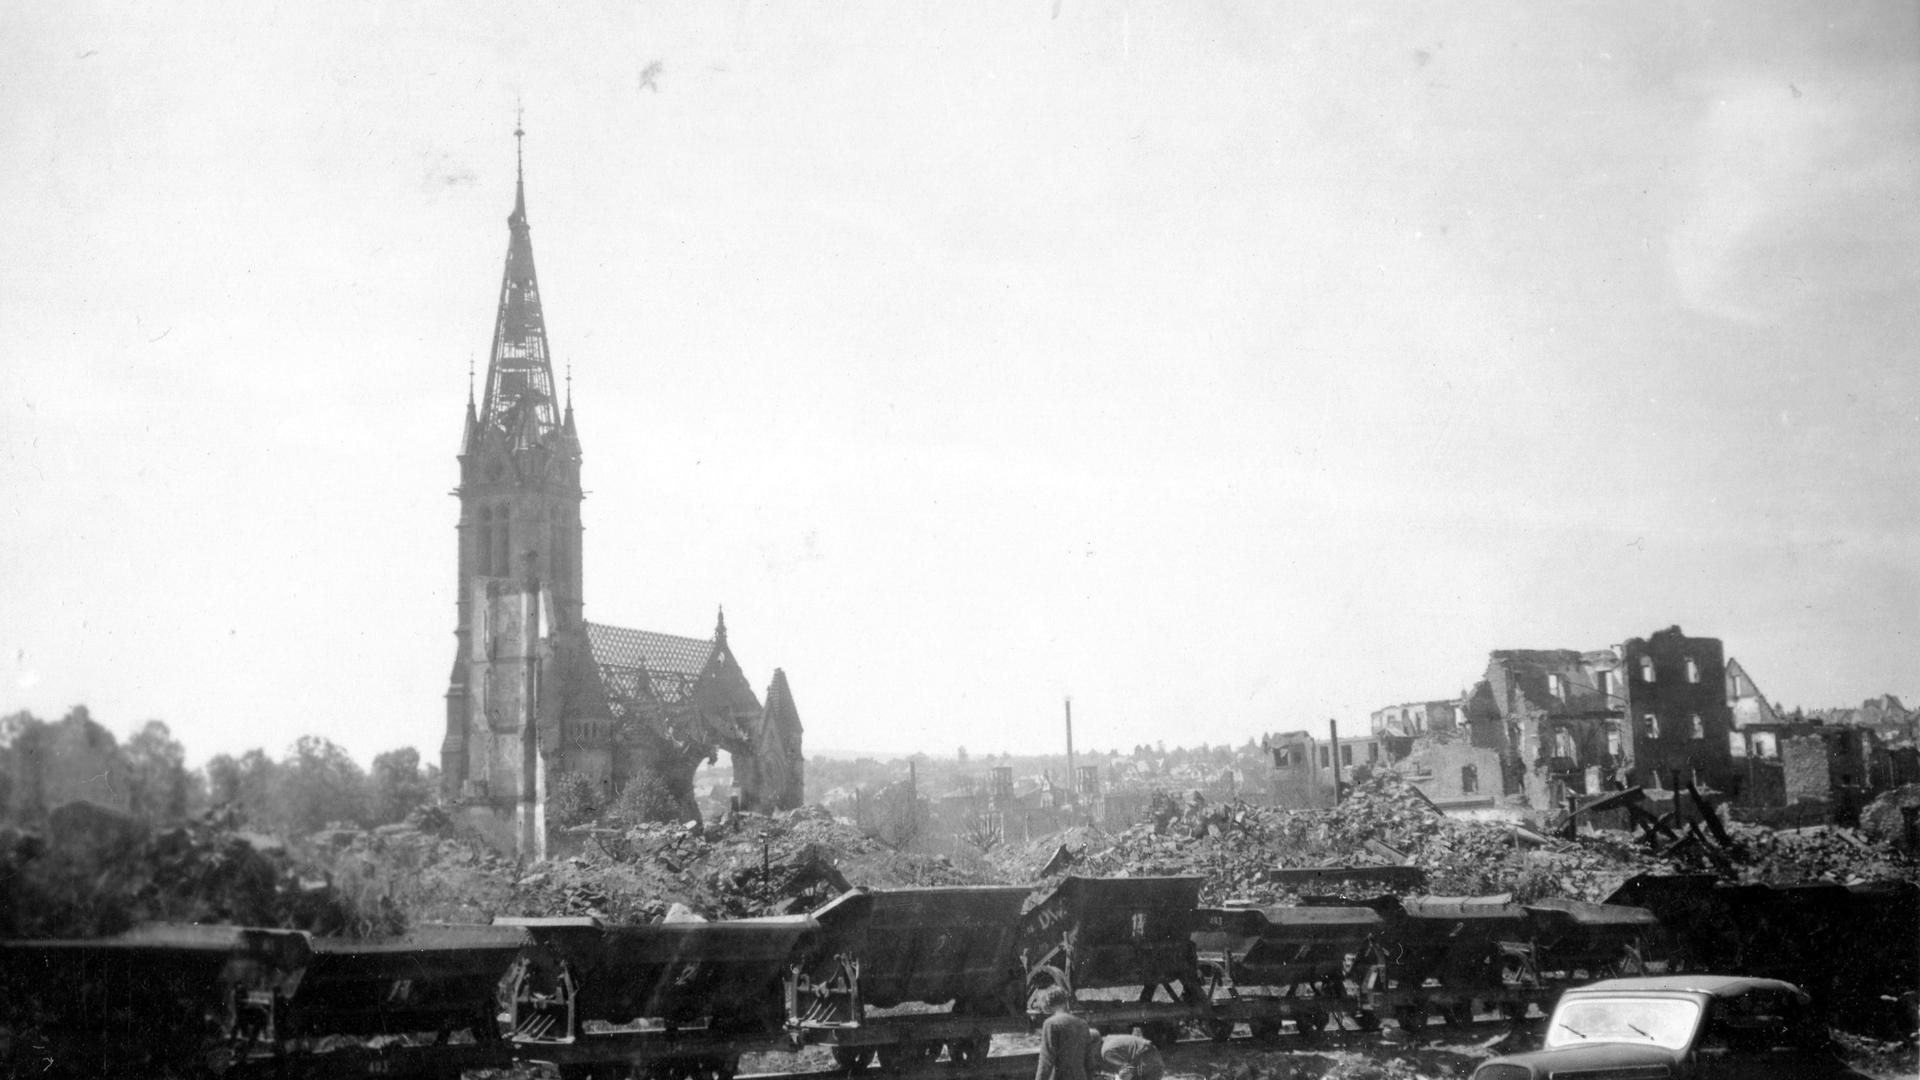 Bilder des Grauens: Der Feuersturm, entfacht durch den Luftangriff britischer Bomber am 23. Februar 1945, hinterließ die Pforzheimer Innenstadt als einziges Trümmerfeld. Auch die Stadtkirche wurde zerstört. An diesem Abend starben weit über 17.000 Menschen.